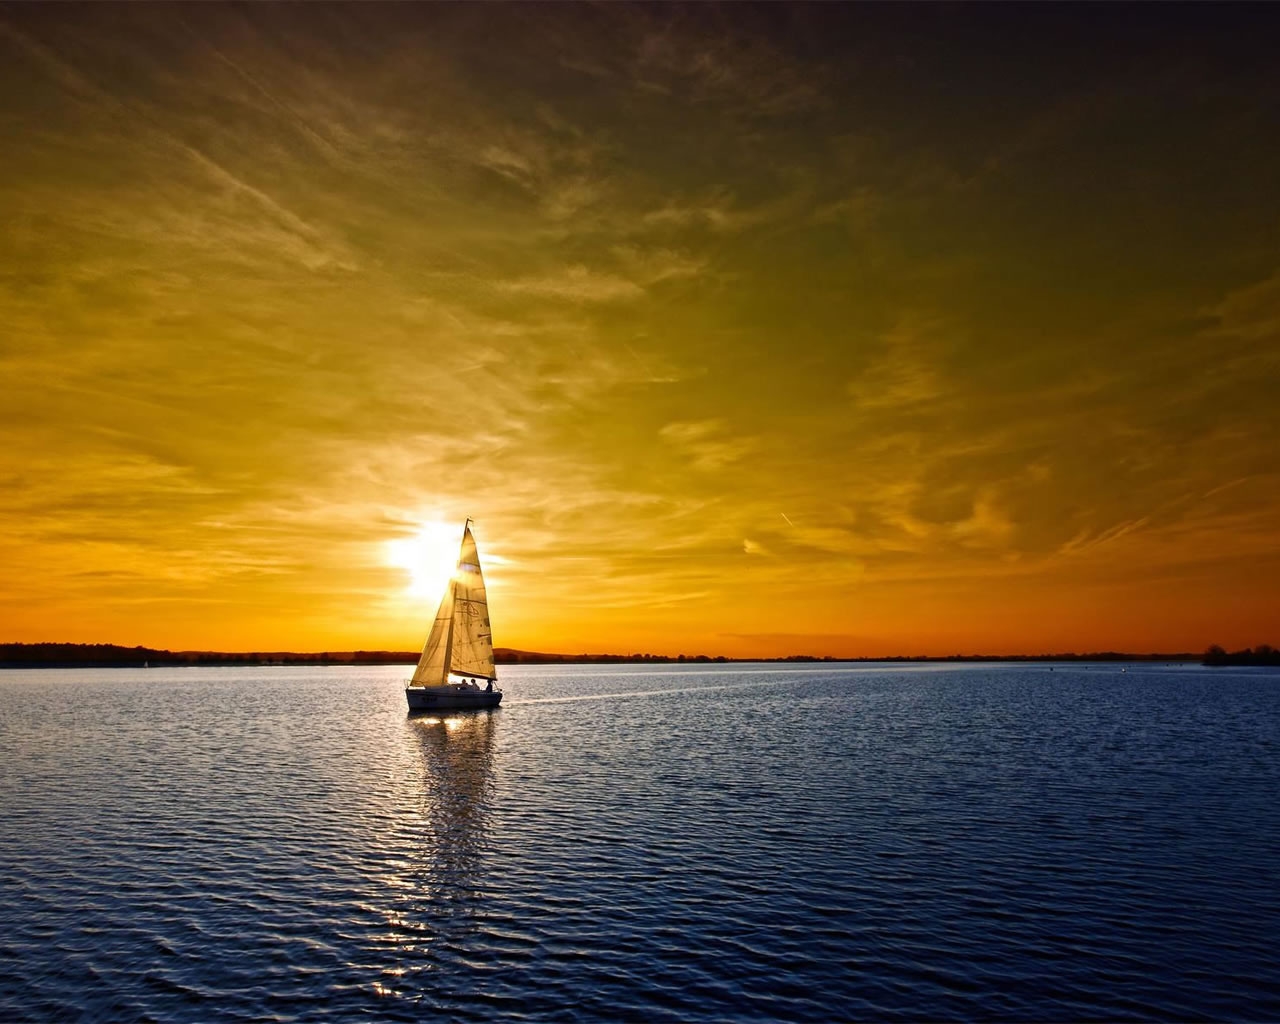 Ocean Sunset for 1280 x 1024 resolution